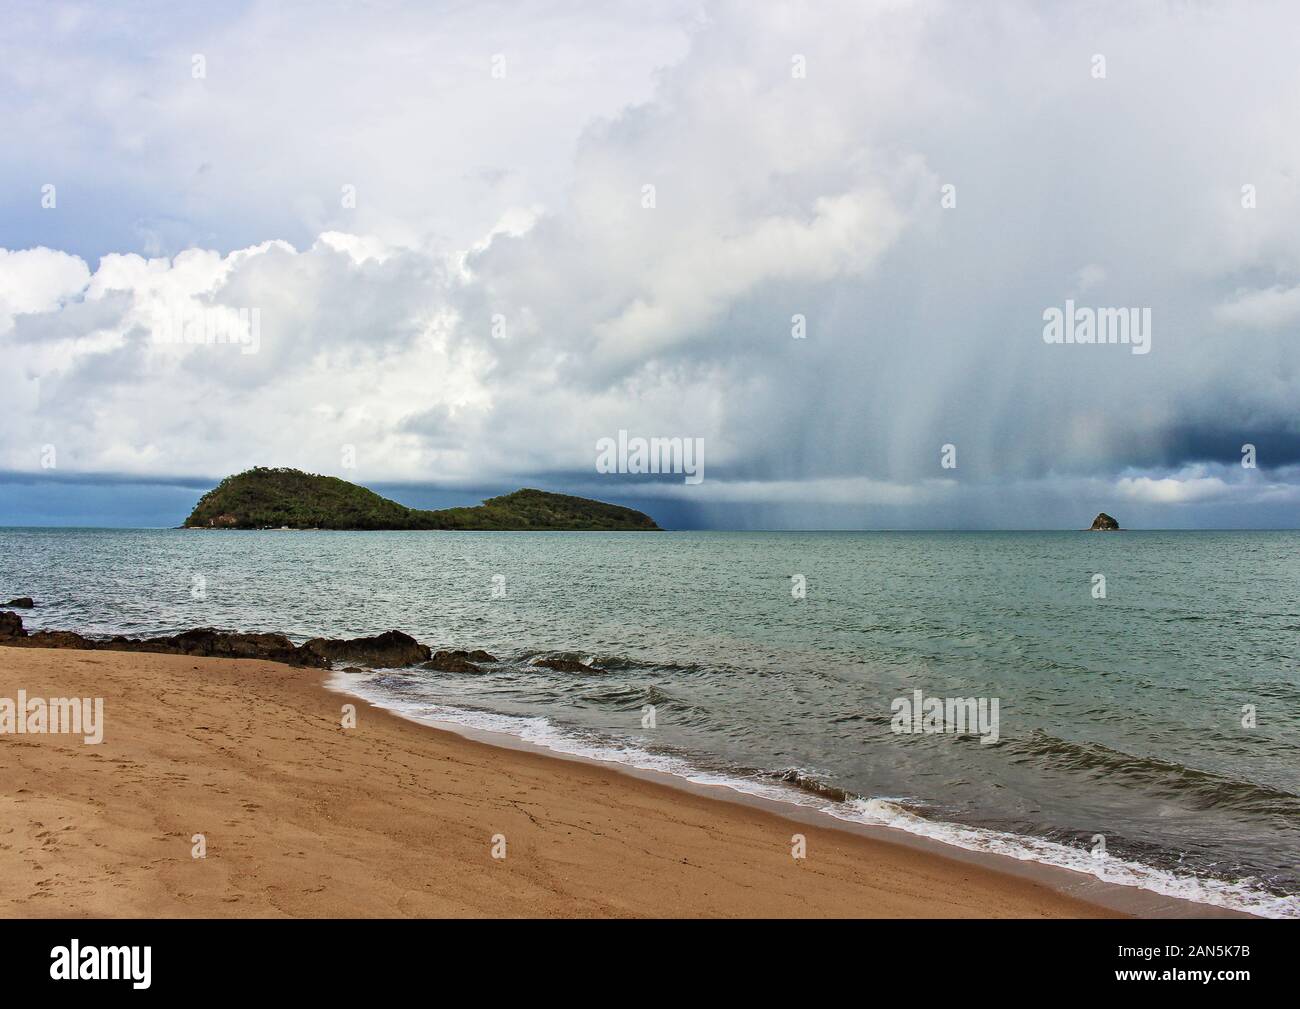 Saison des pluies tropicales bourrasque de pluie s'abattant sur Double Island off Palm Cove juste au nord de Cairns en far north Queensland Australie Banque D'Images